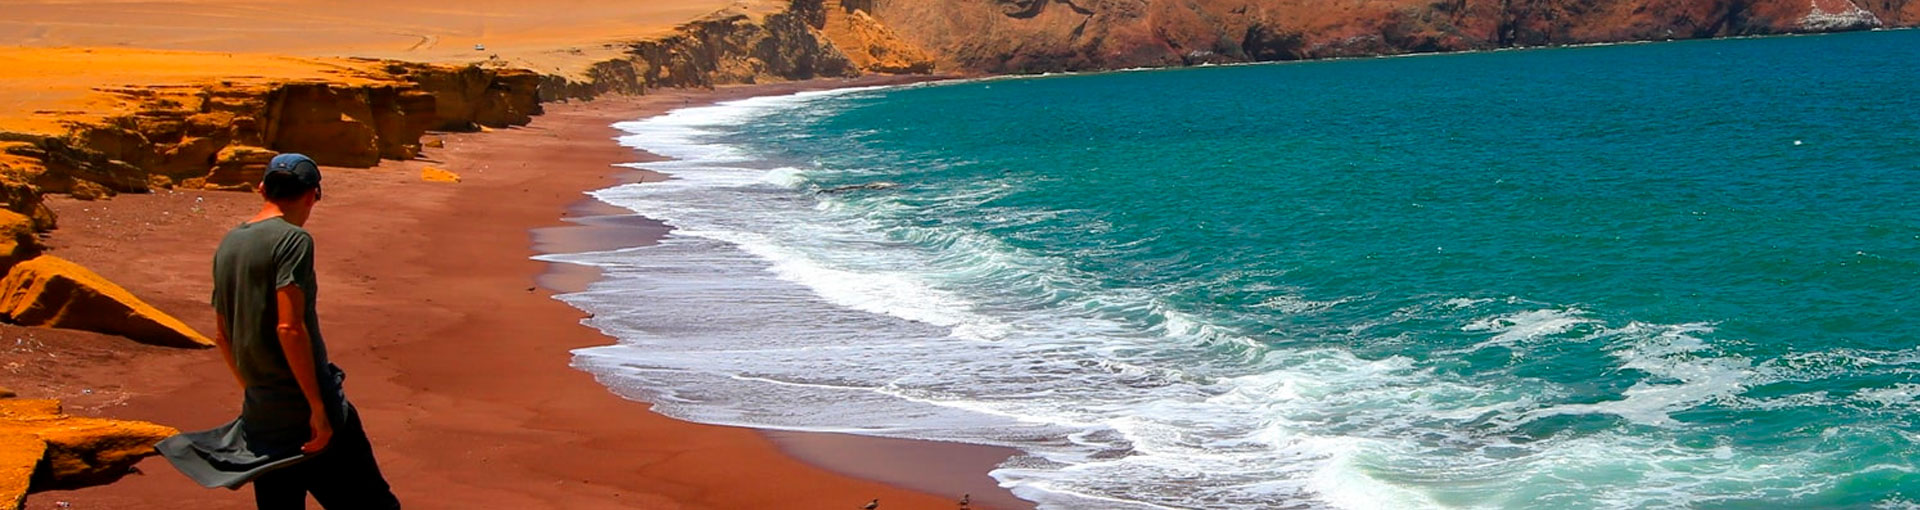 Beaches of Peru